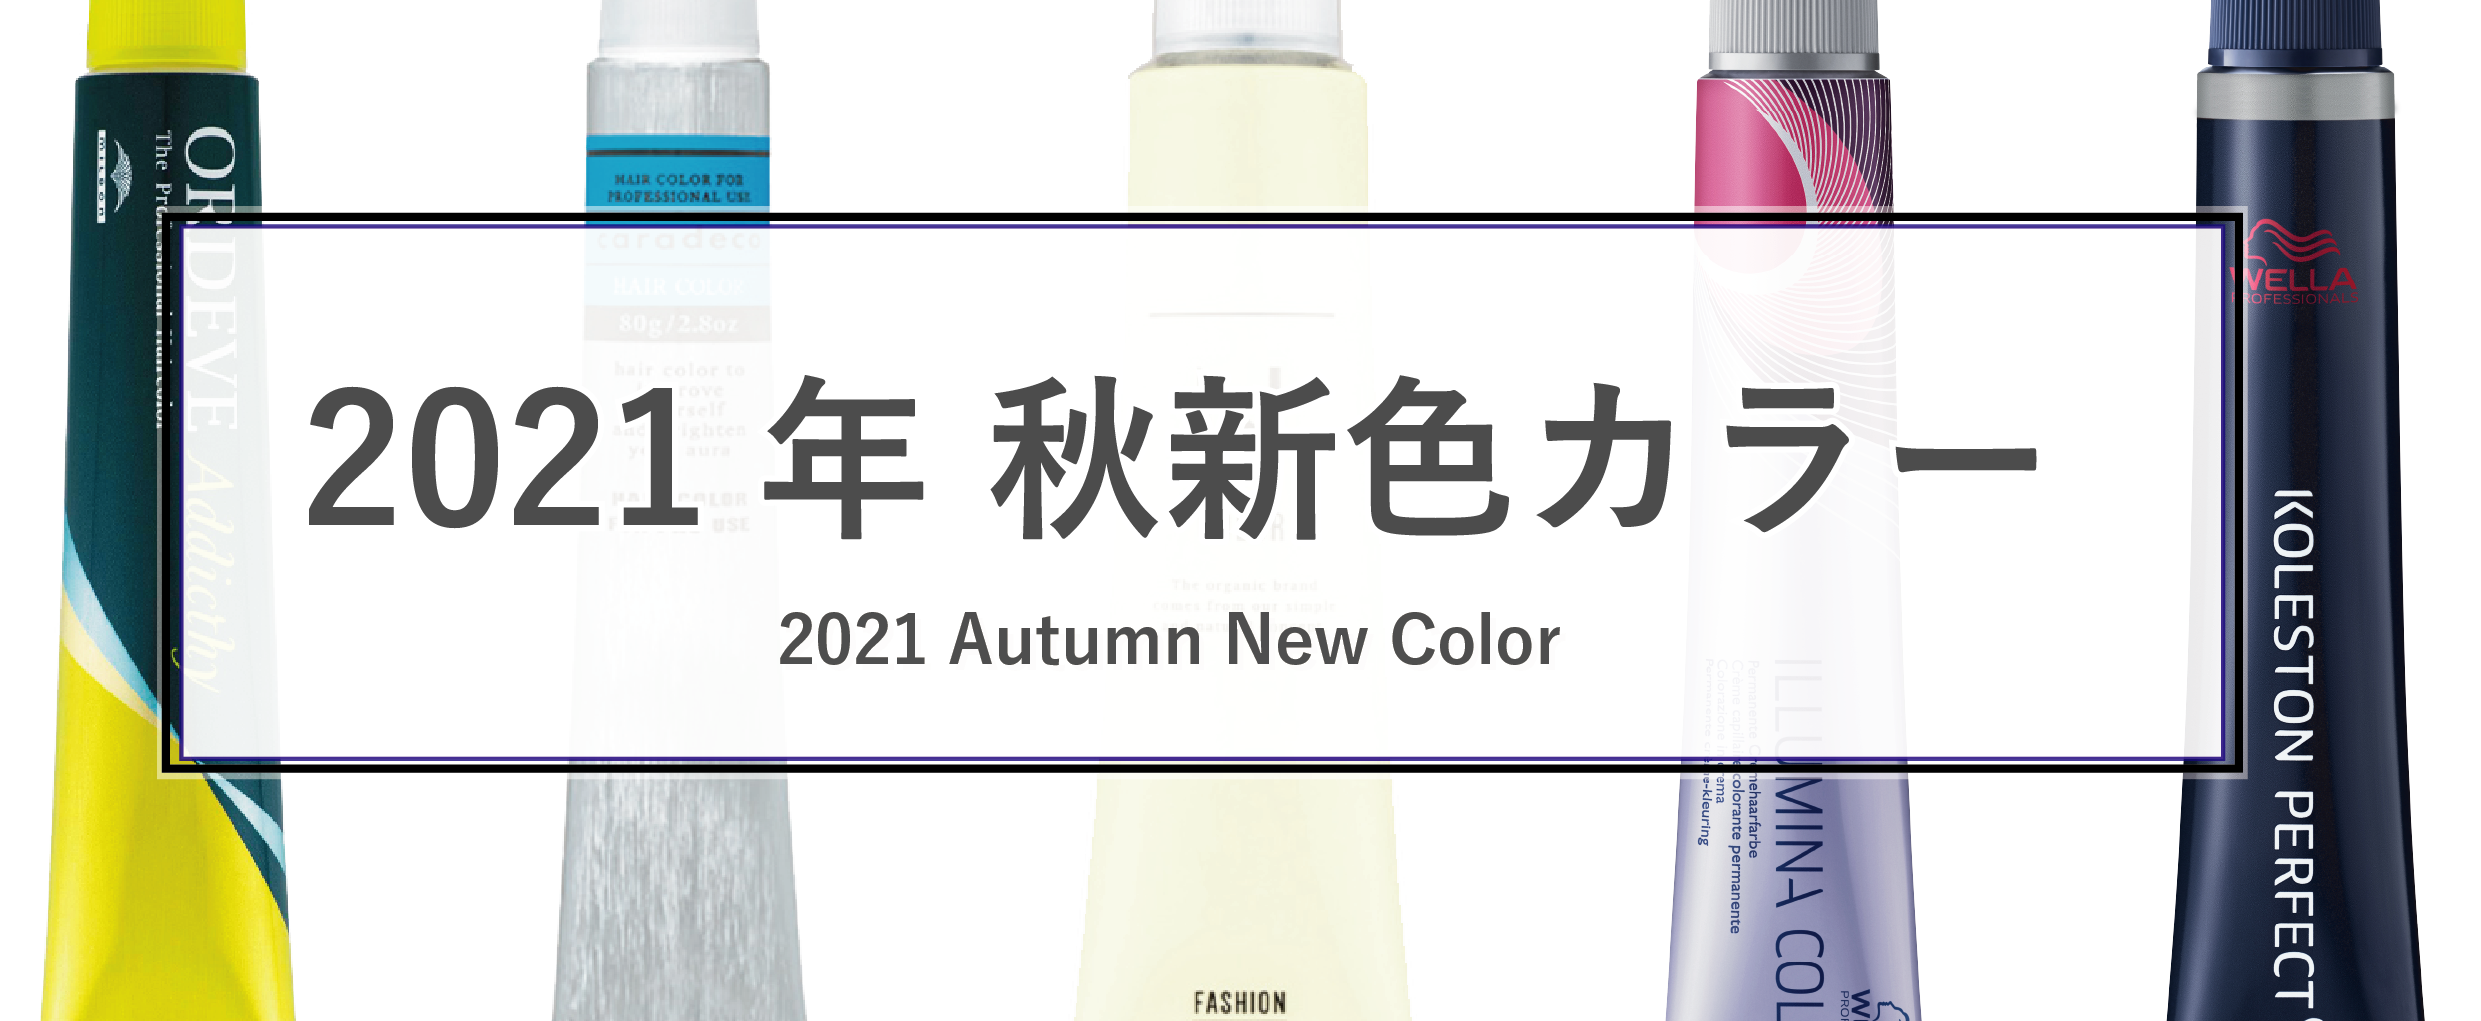 2021年の新作カラー